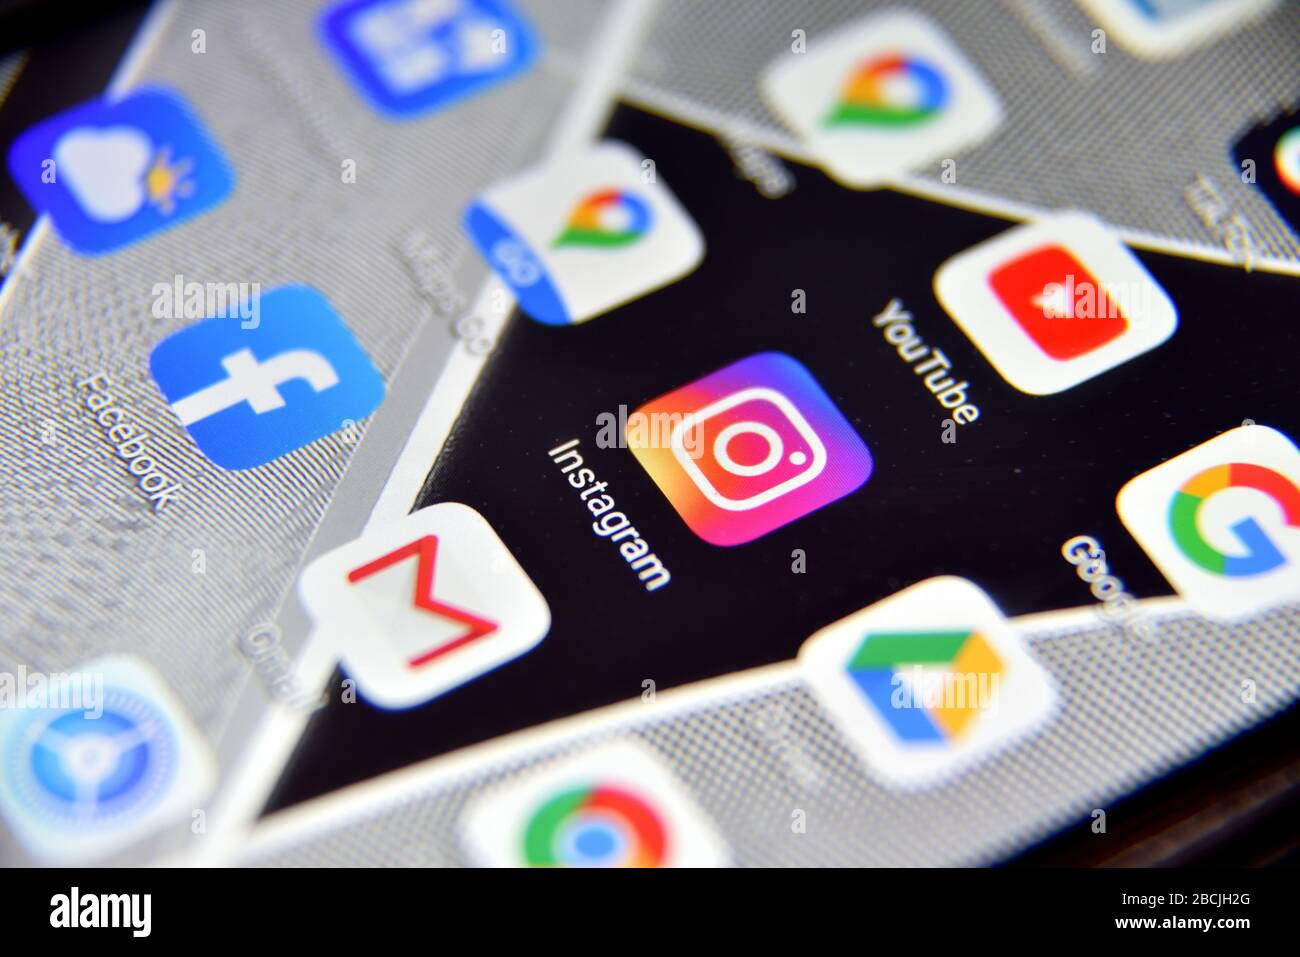 Valverde (CT), Italie - 04 avril 2020 : vue rapprochée de l'application d'icônes Instagram sur un smartphone Android, y compris d'autres icônes. Banque D'Images